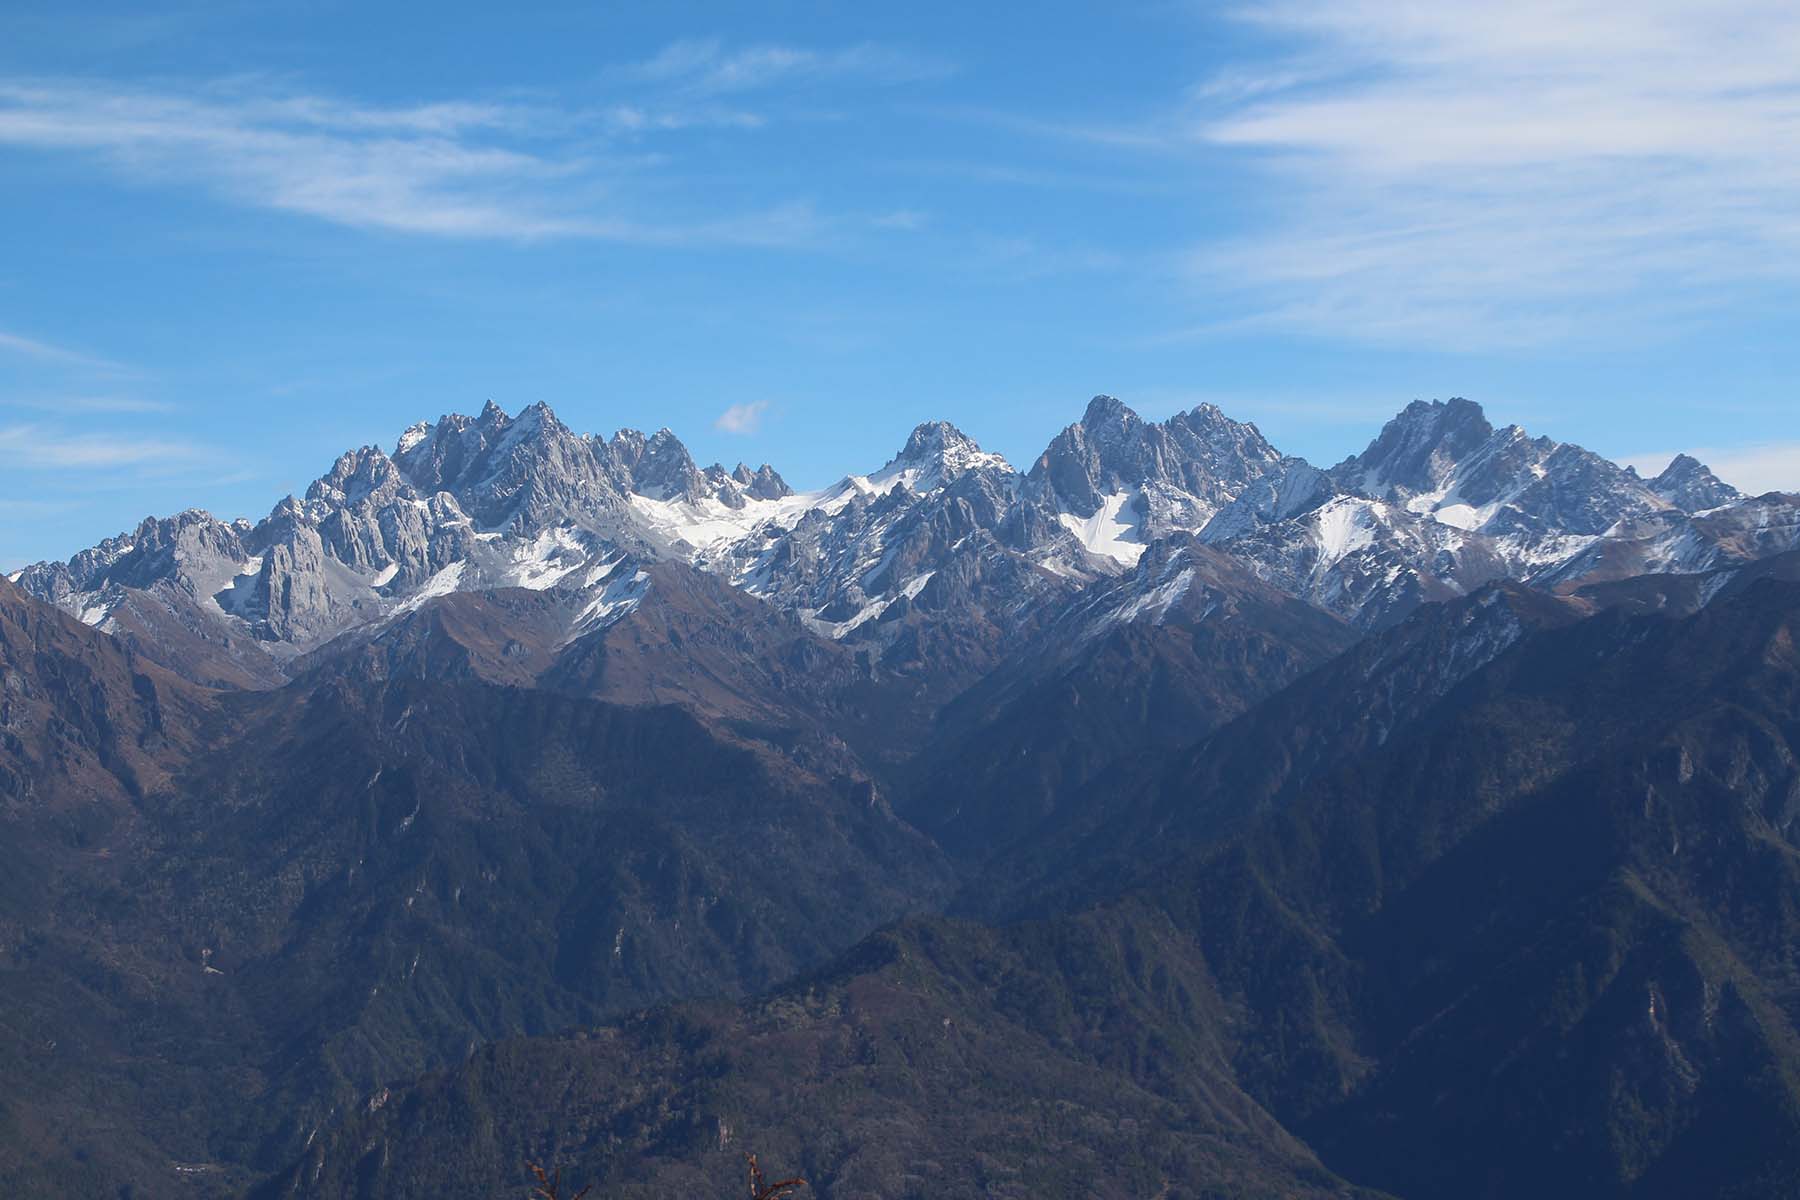 Wutan Peaks of Jiajin